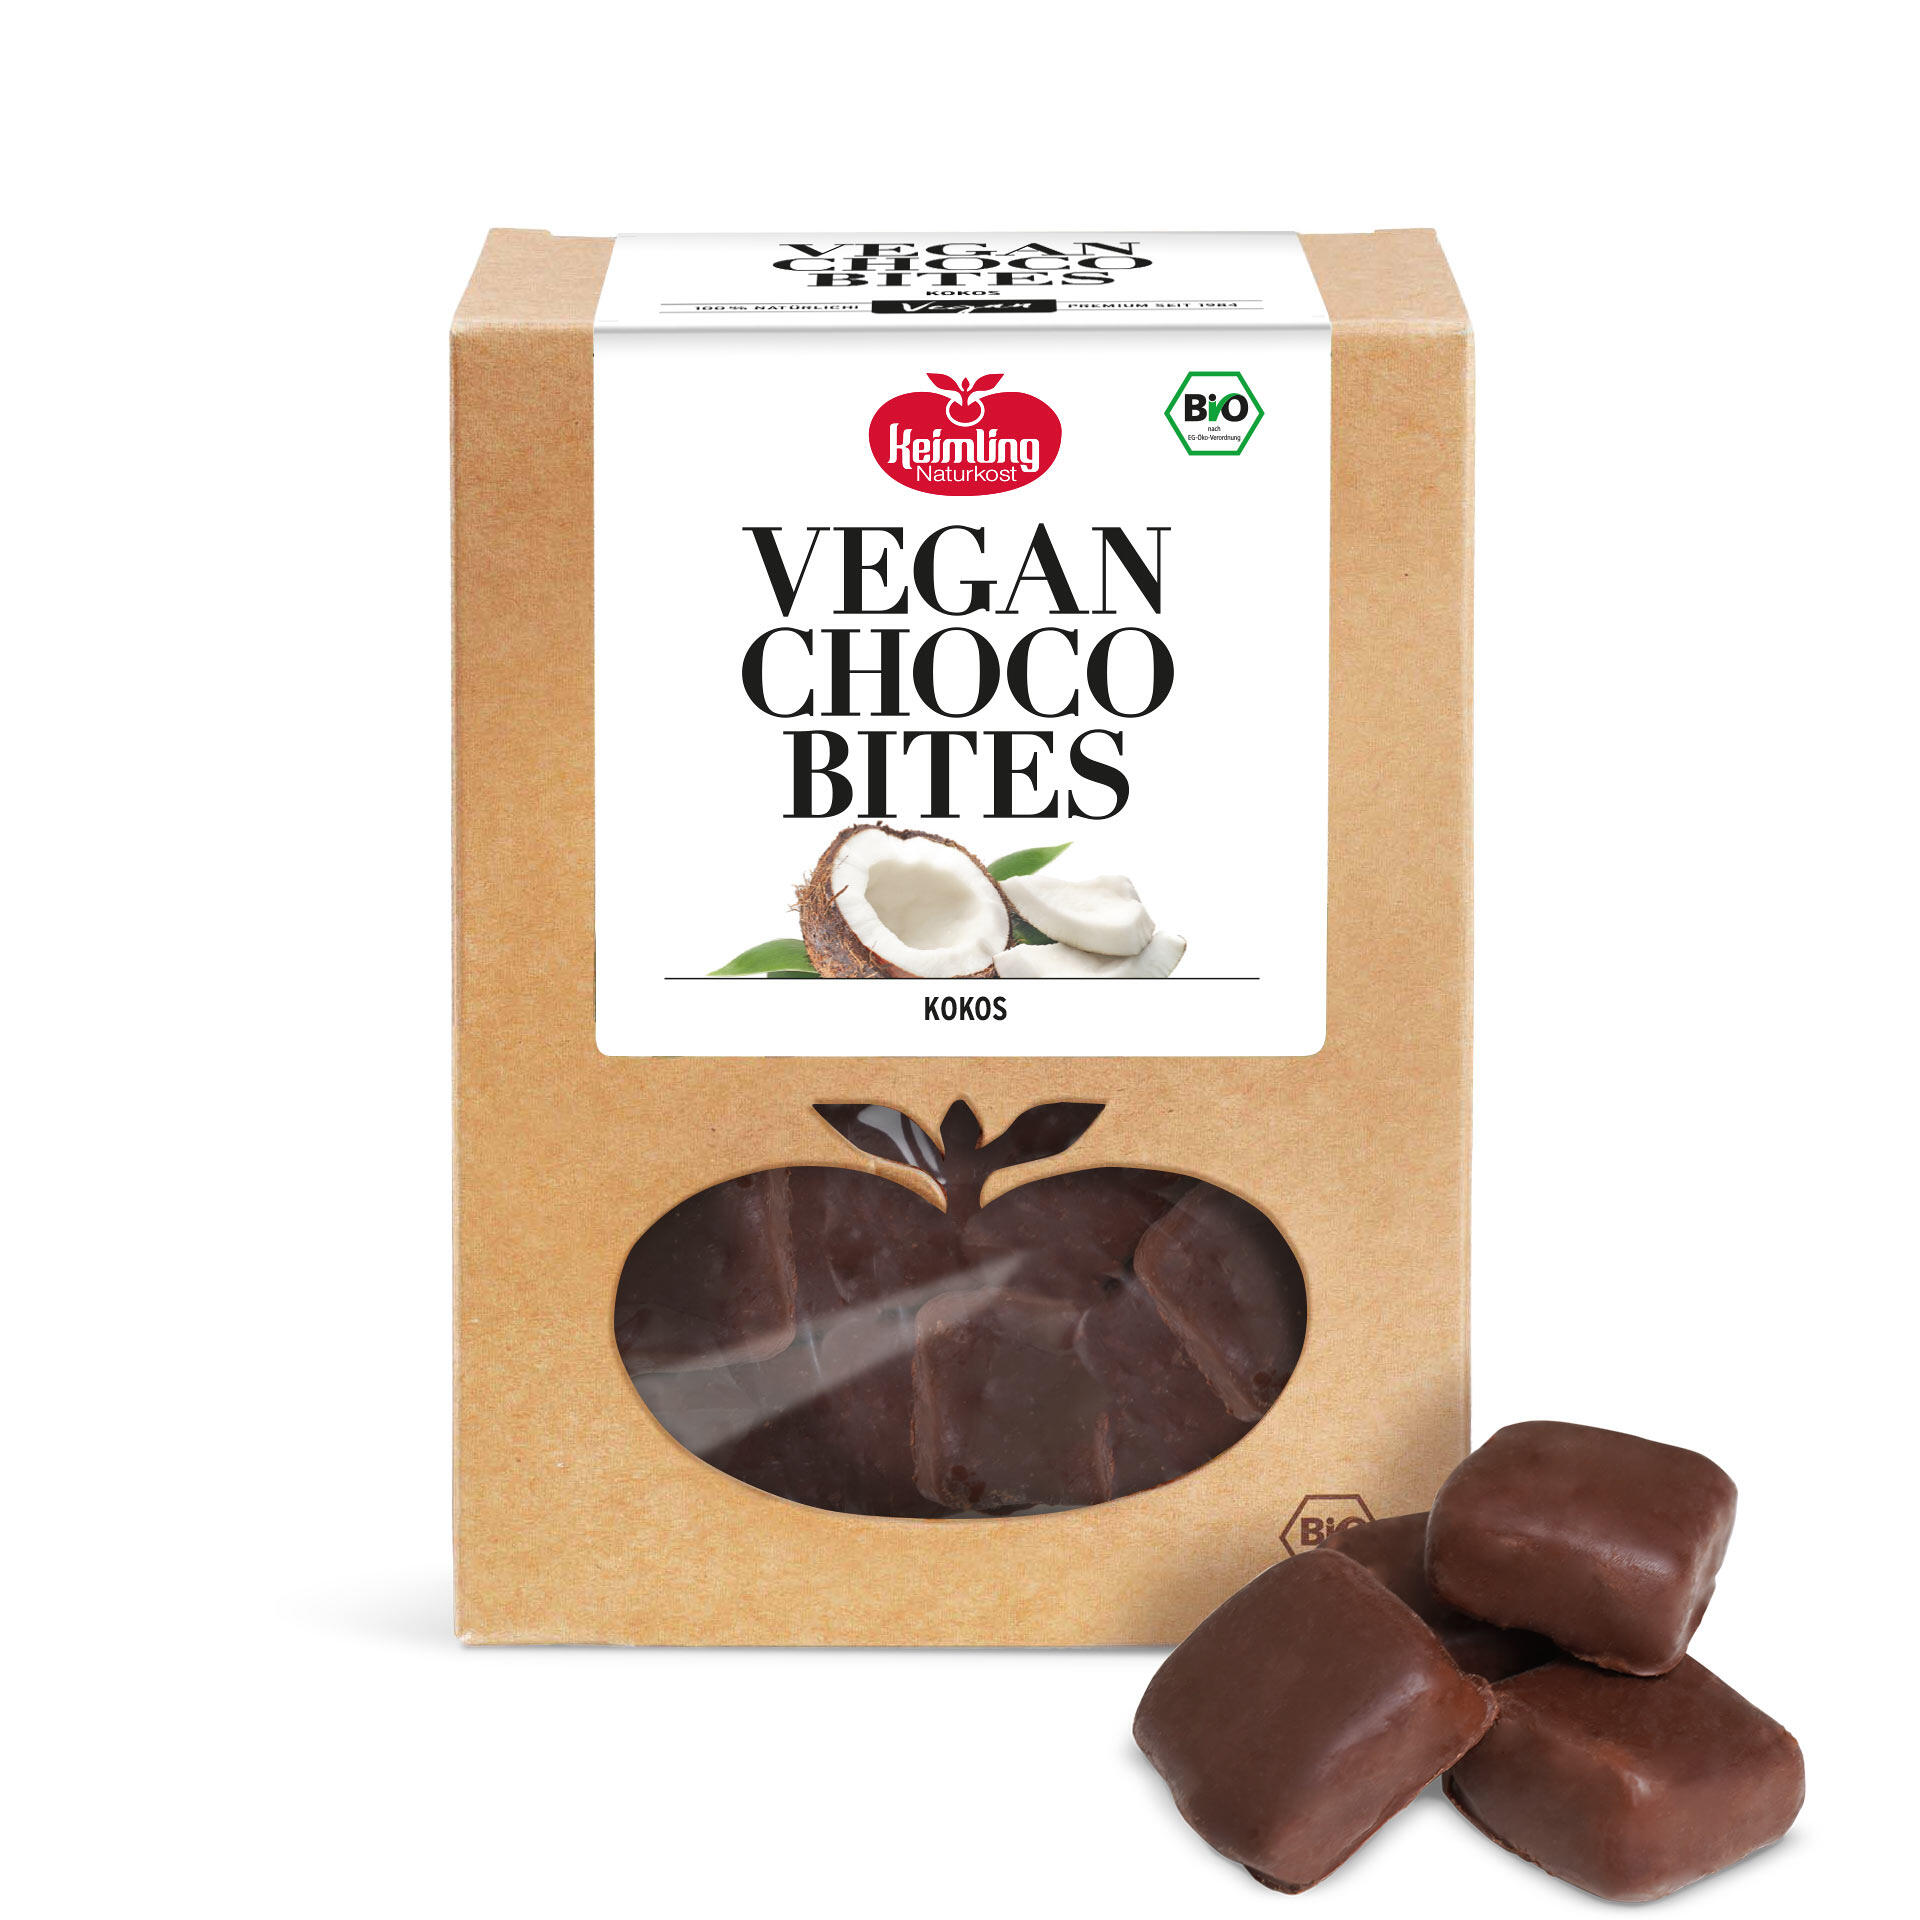 Liebevoll leben und lernen - junge Menschen - Kinder - Bild Bio Vegan Choco Bites Kokos u.a.